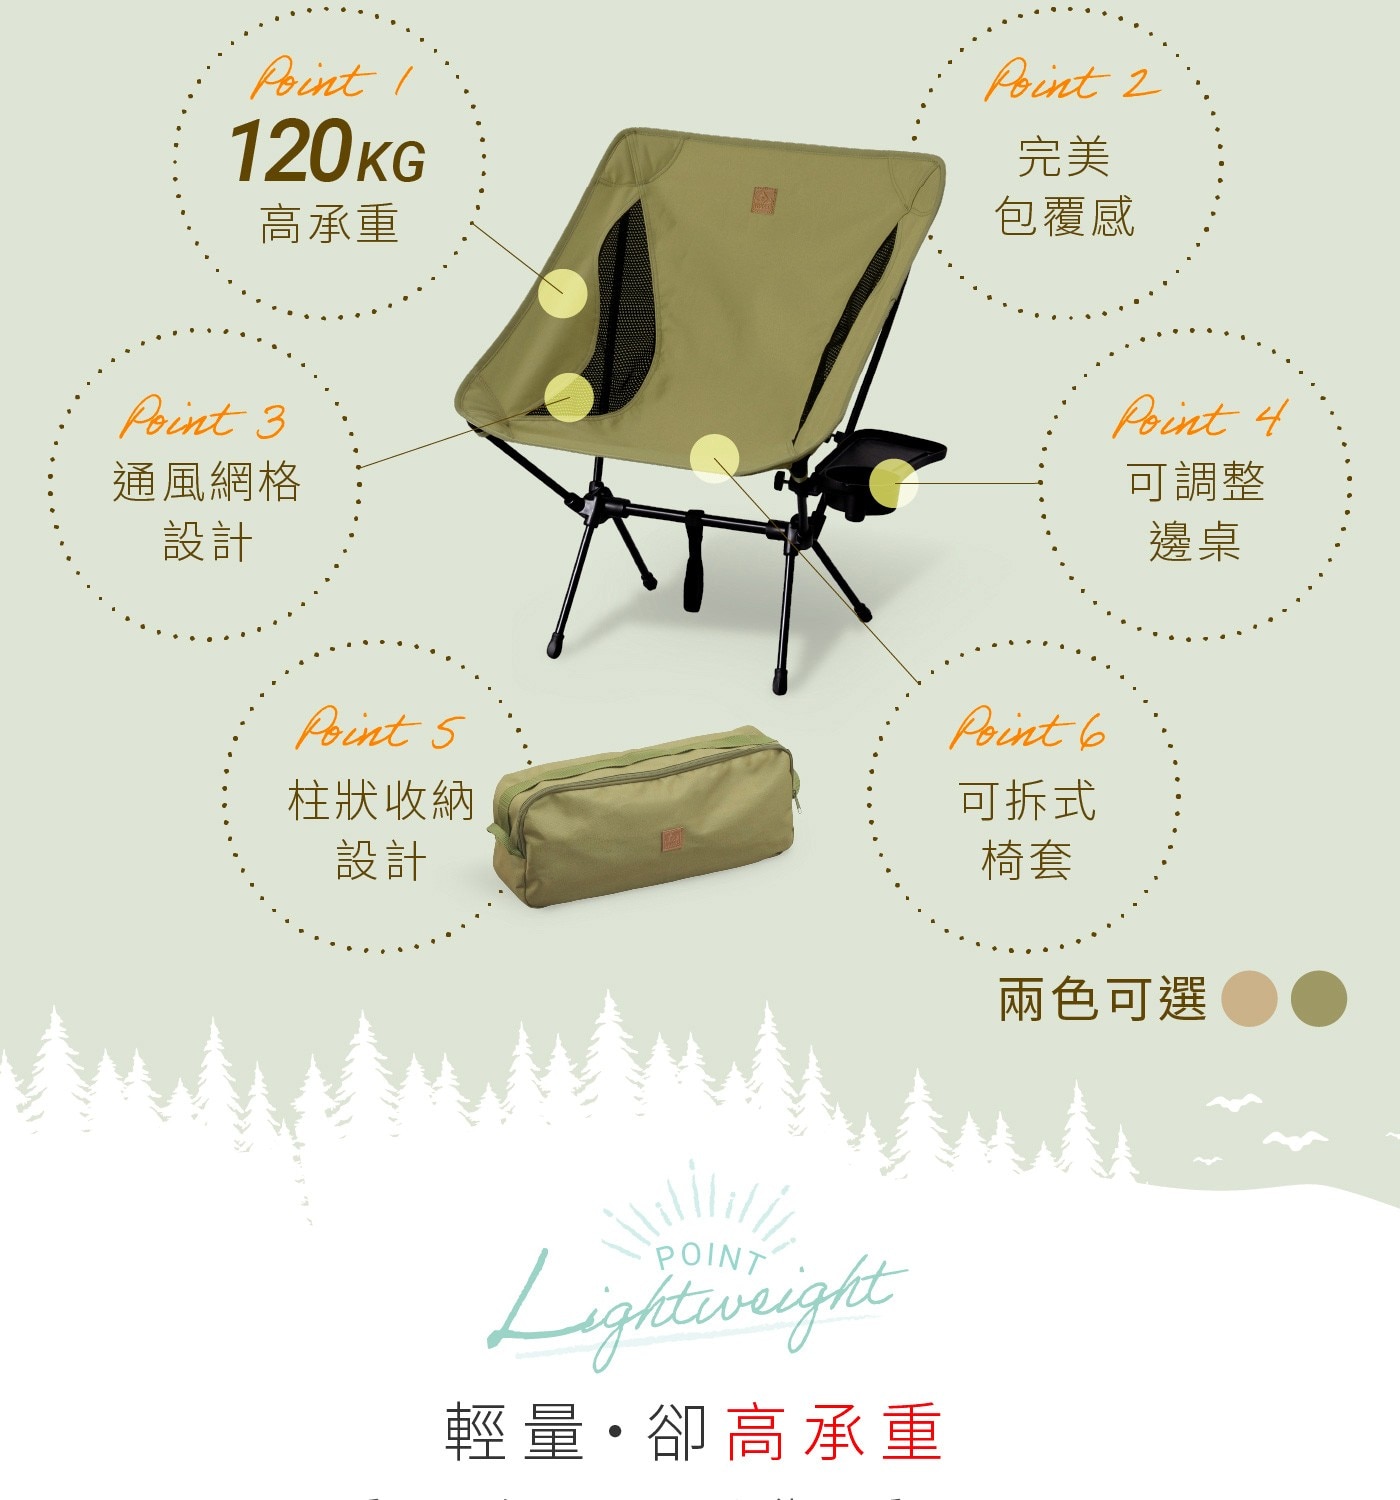 IRIS OHYAMA 露營椅 CC-LOW剛好微傾角度恰到好處的包覆讓露營時光更加愜意120KG高承重可調整邊桌通風網格柱狀收納可拆式椅套